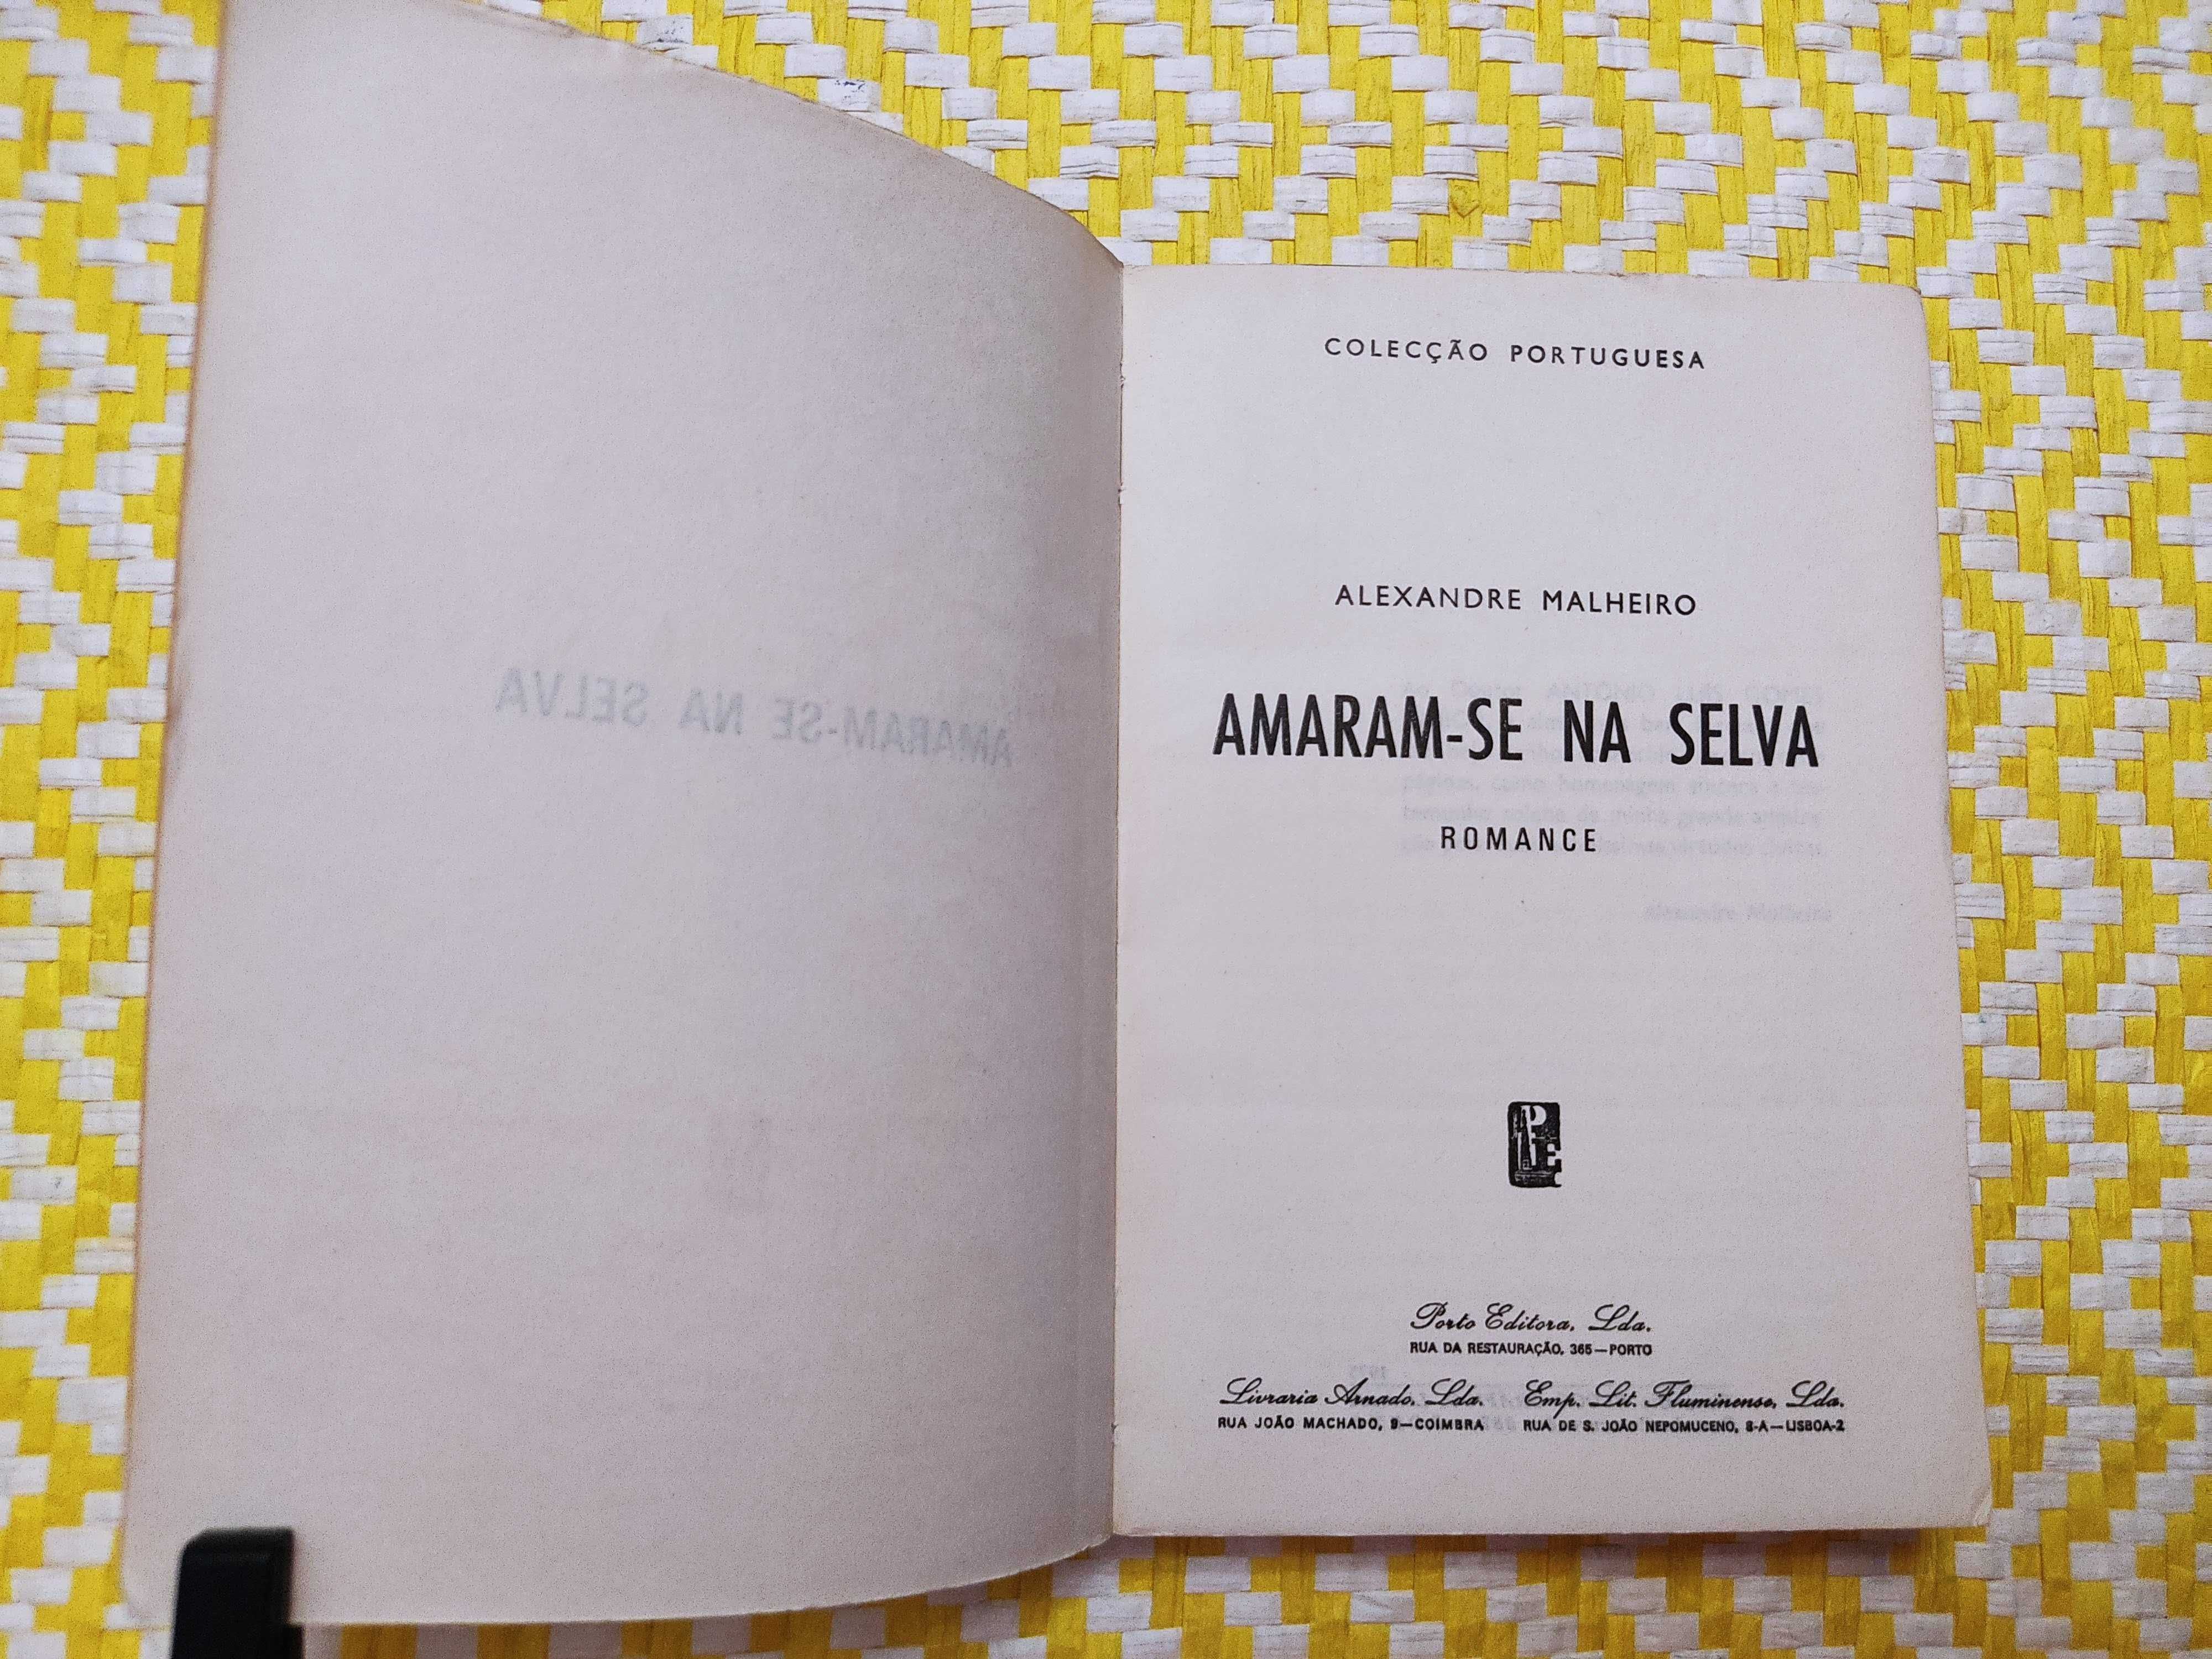 AMARAM-SE NA SELVA
Alexandre Malheiro
Editora: Porto Editora